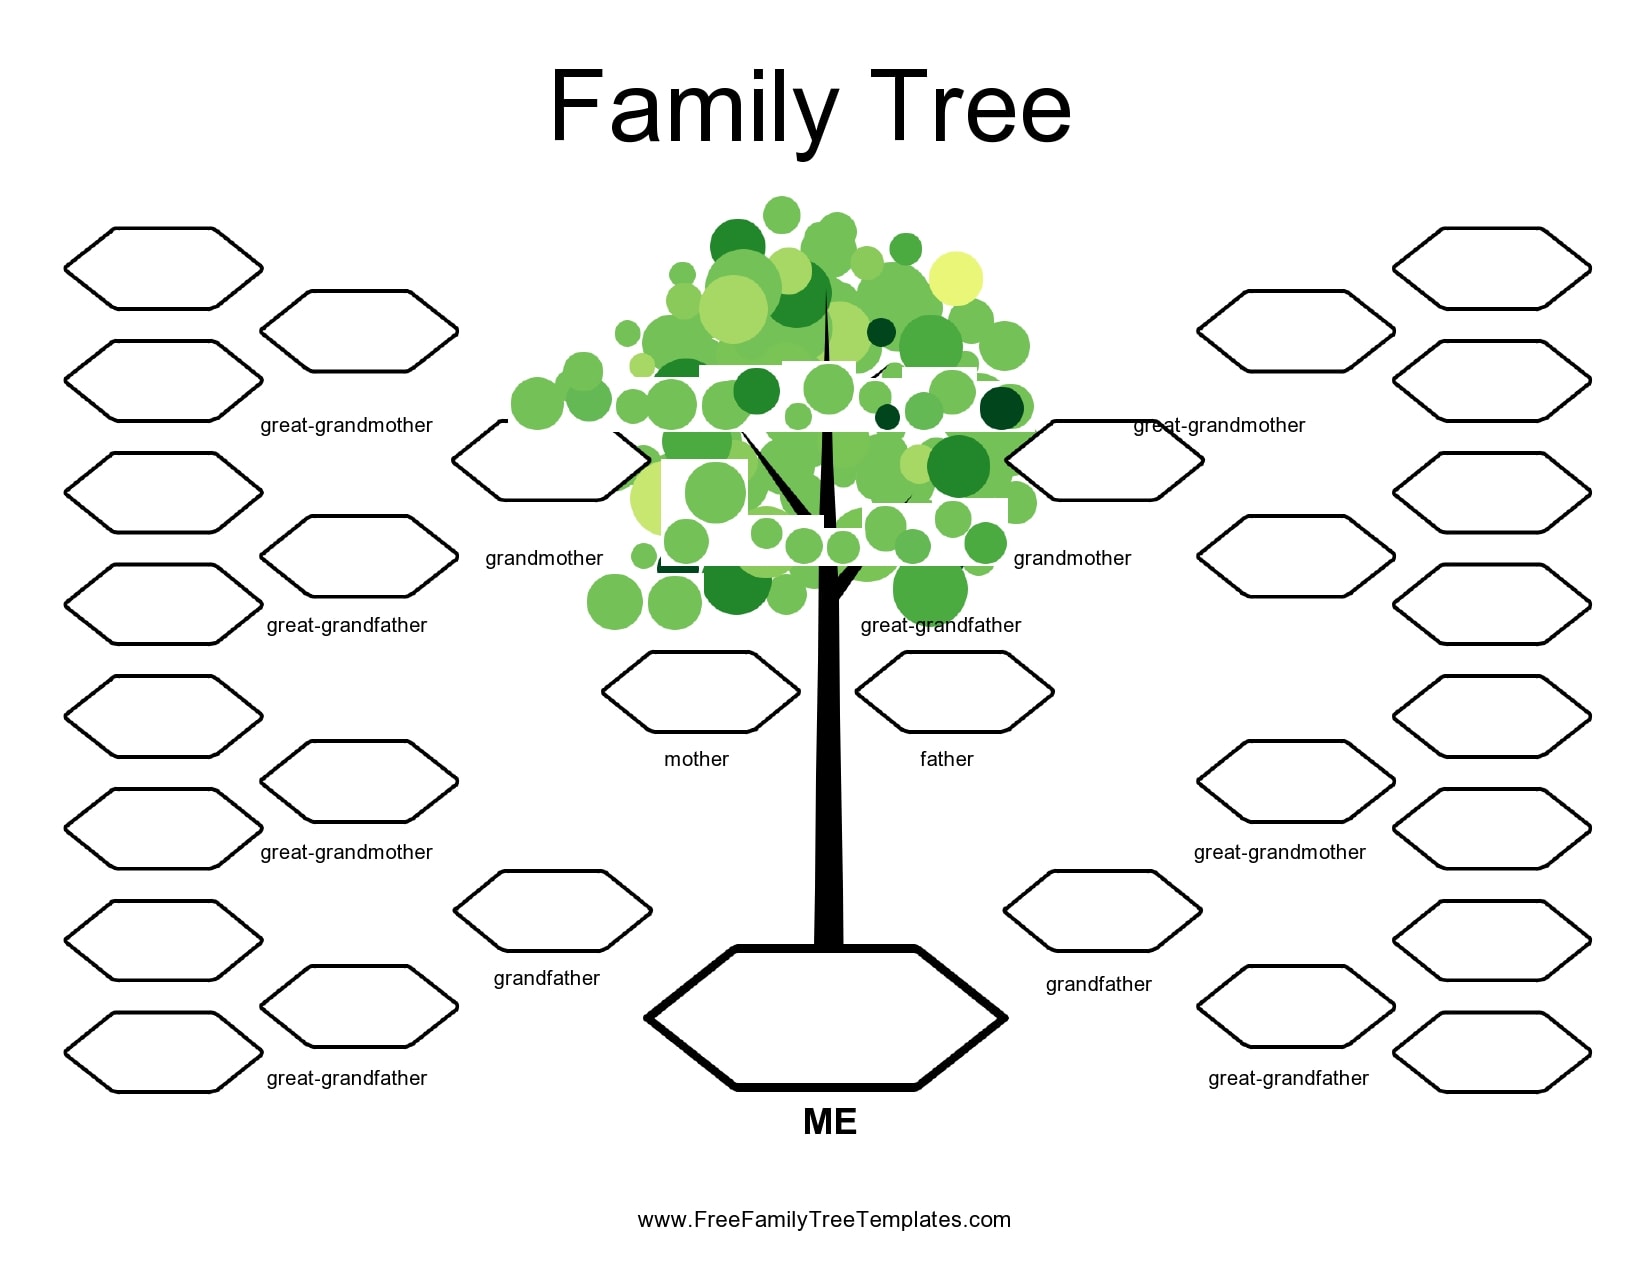 conveniencia-por-polvoriento-plantilla-family-tree-cascada-ponte-de-pie-en-su-lugar-probabilidad